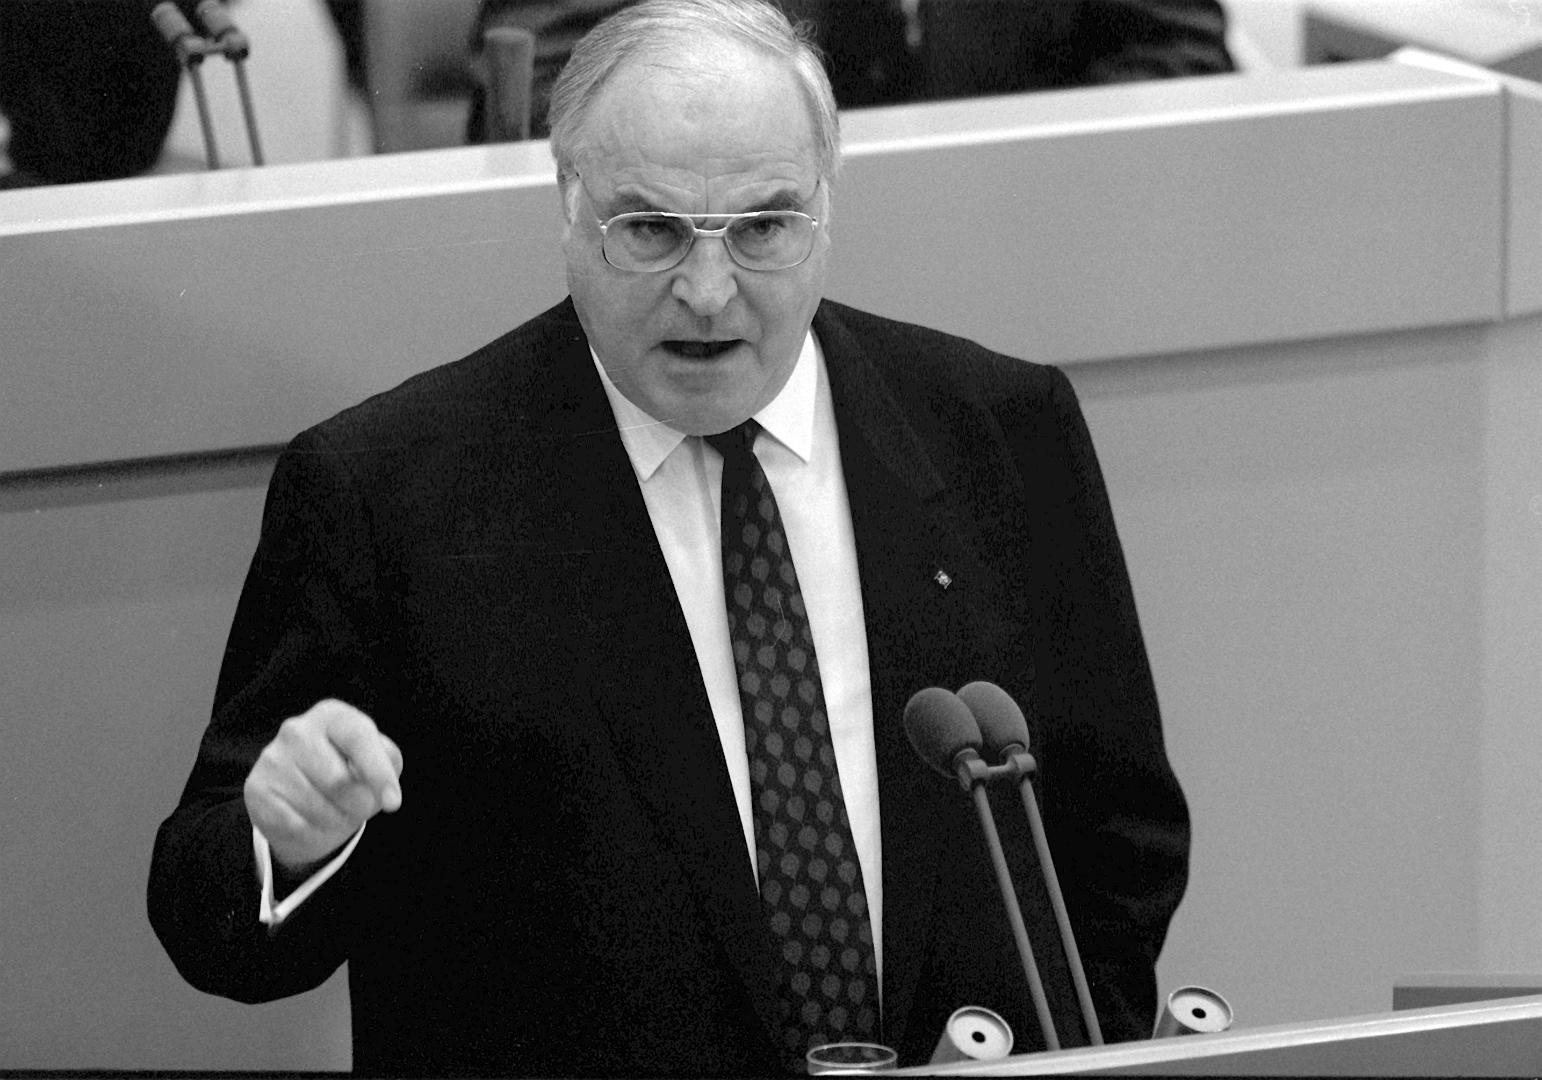 Bundeskanzler Helmut Kohl (CDU) während der Haushaltsdebatte im Deutschen Bundestag in Bonn am 28. November 1989.